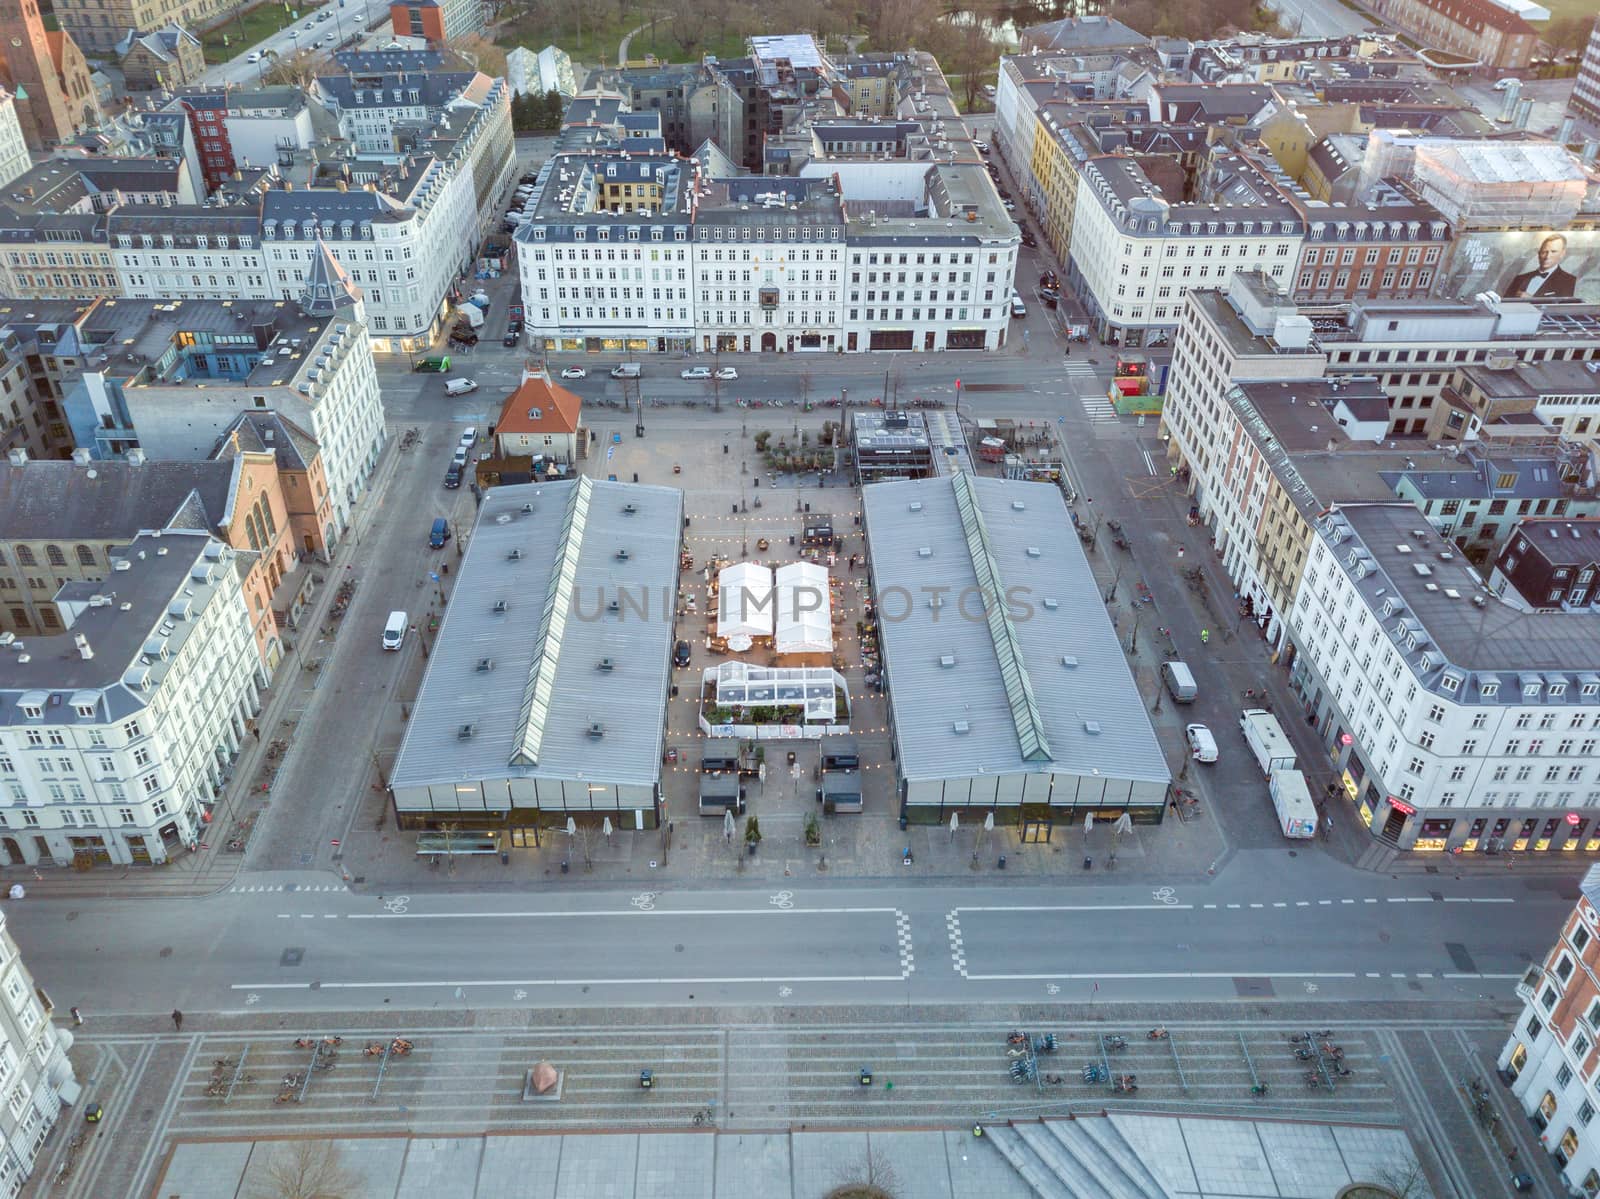 Torvehallerne in Copenhagen, Denmark by oliverfoerstner